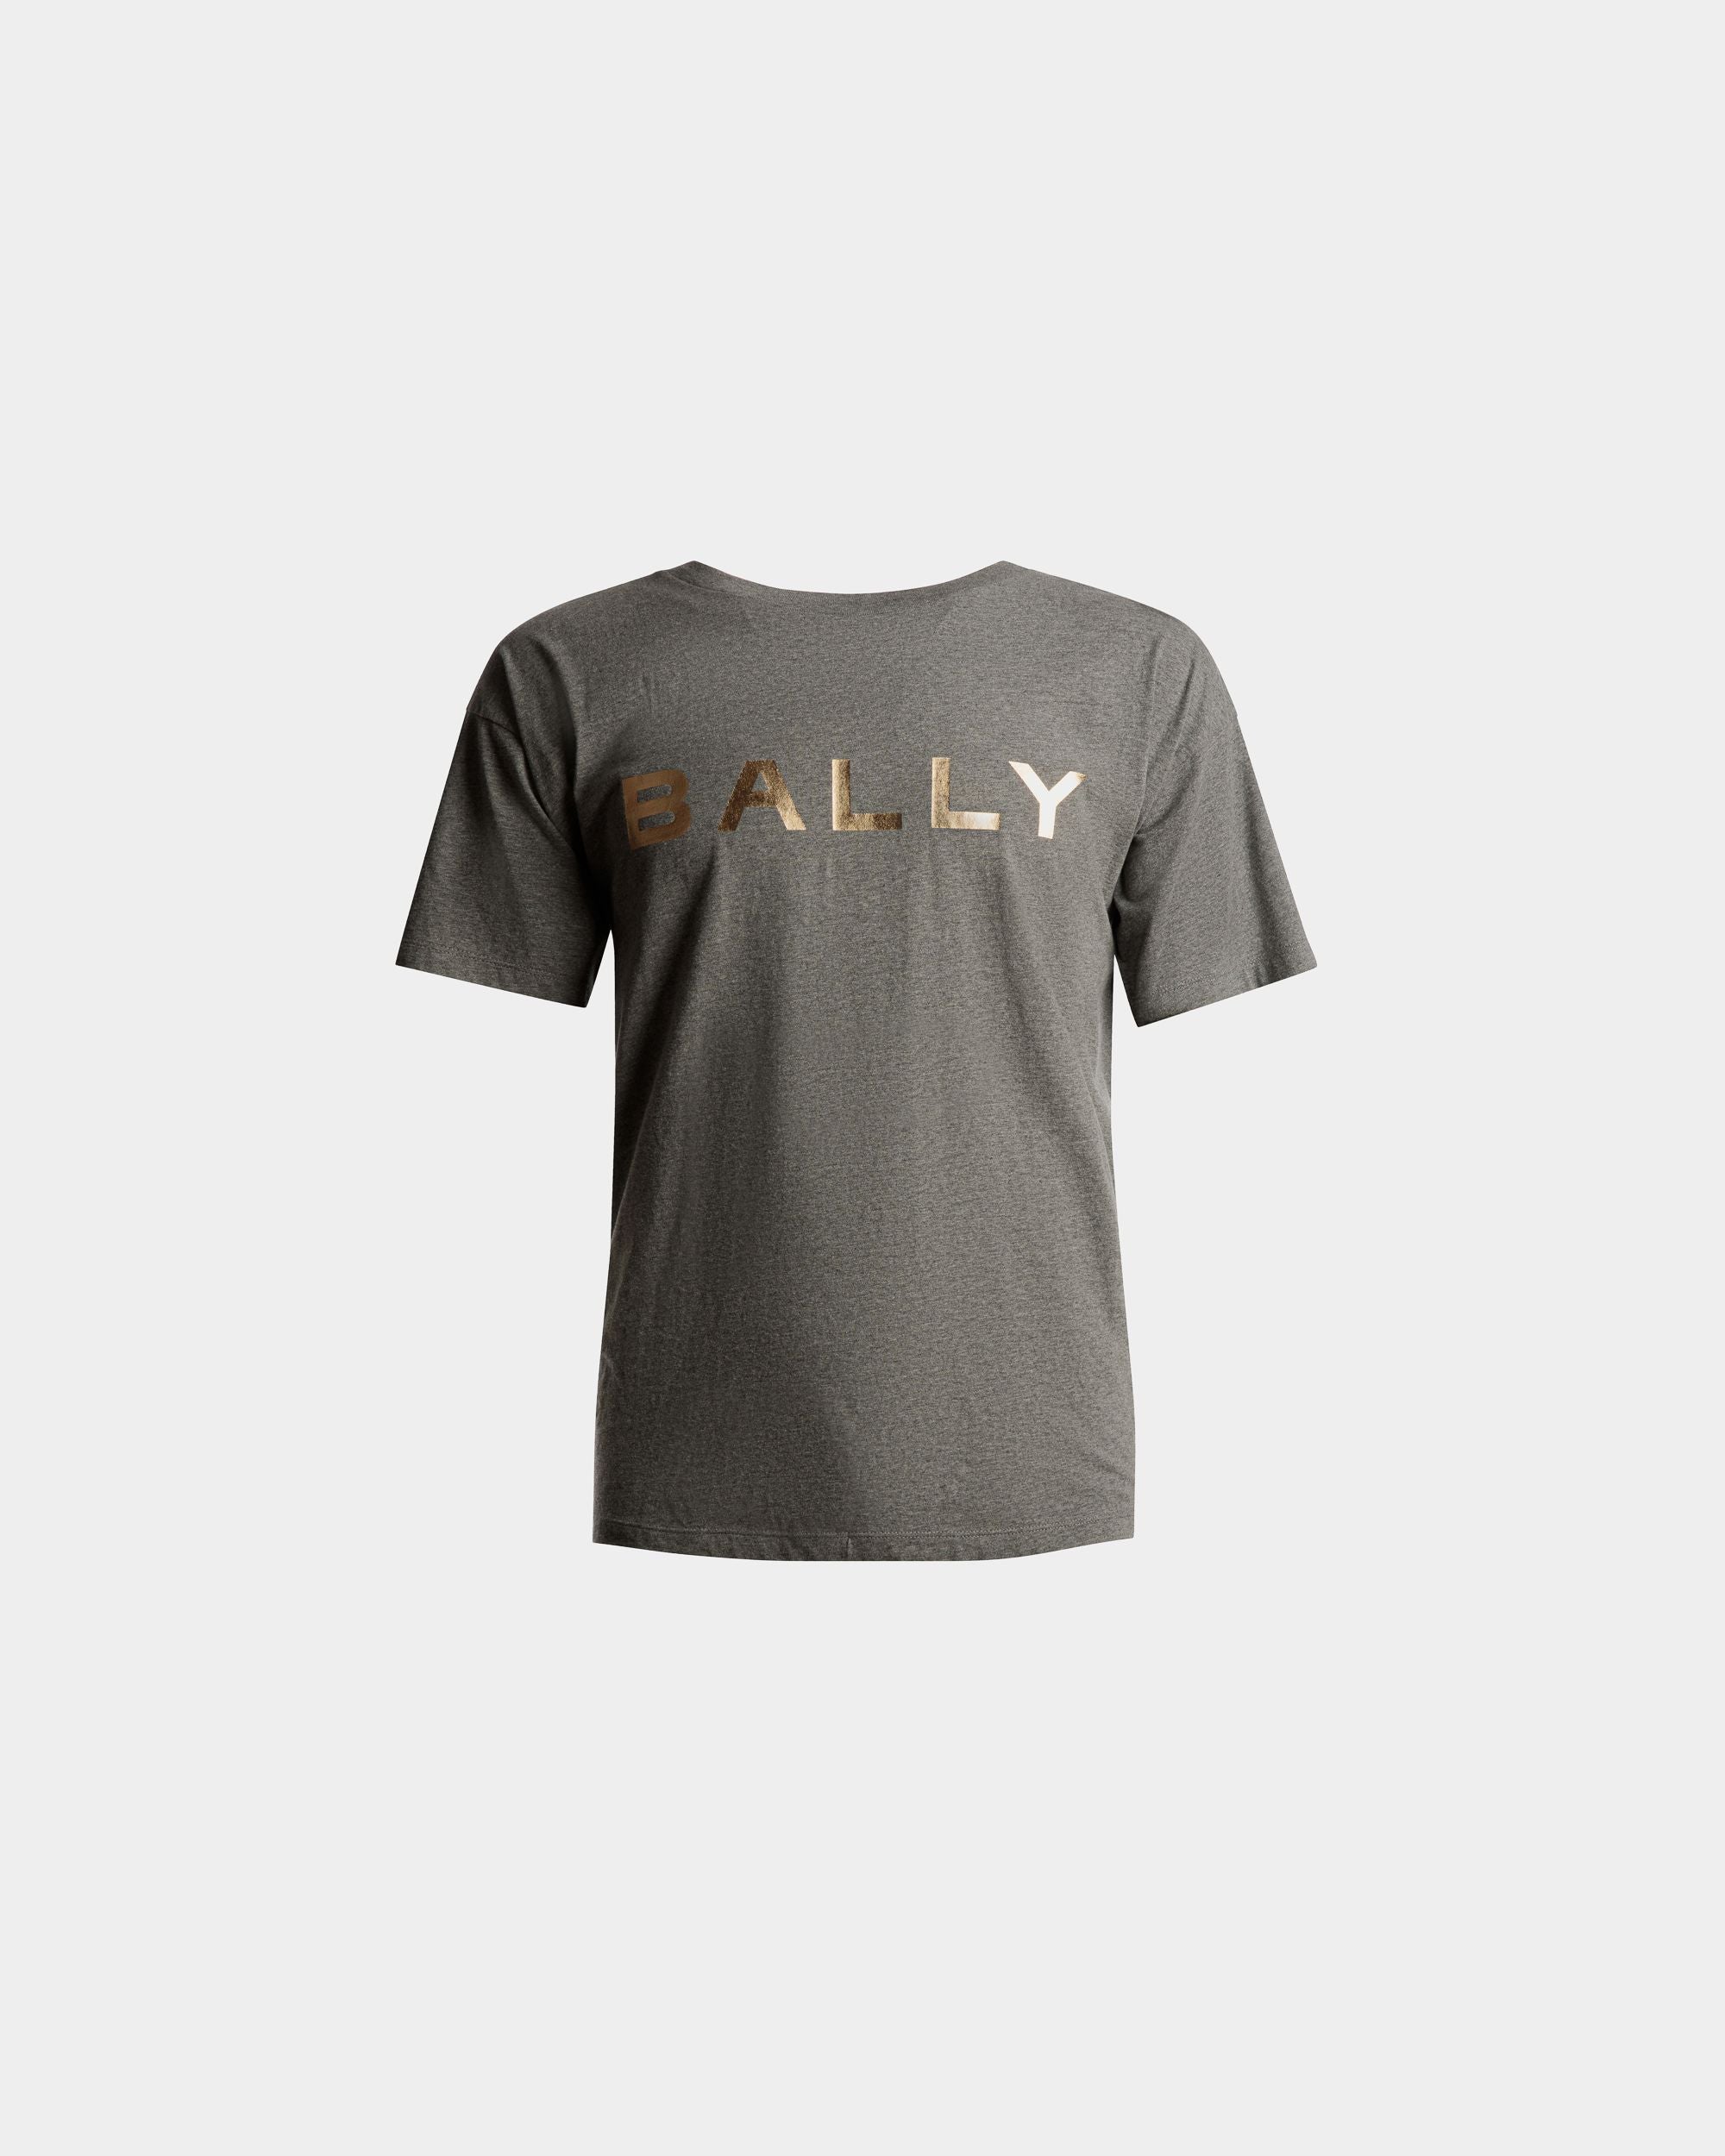 T-Shirt mit Logo | T-Shirt für Herren | Grau melierte Baumwolle | Bally | Still Life Vorderseite